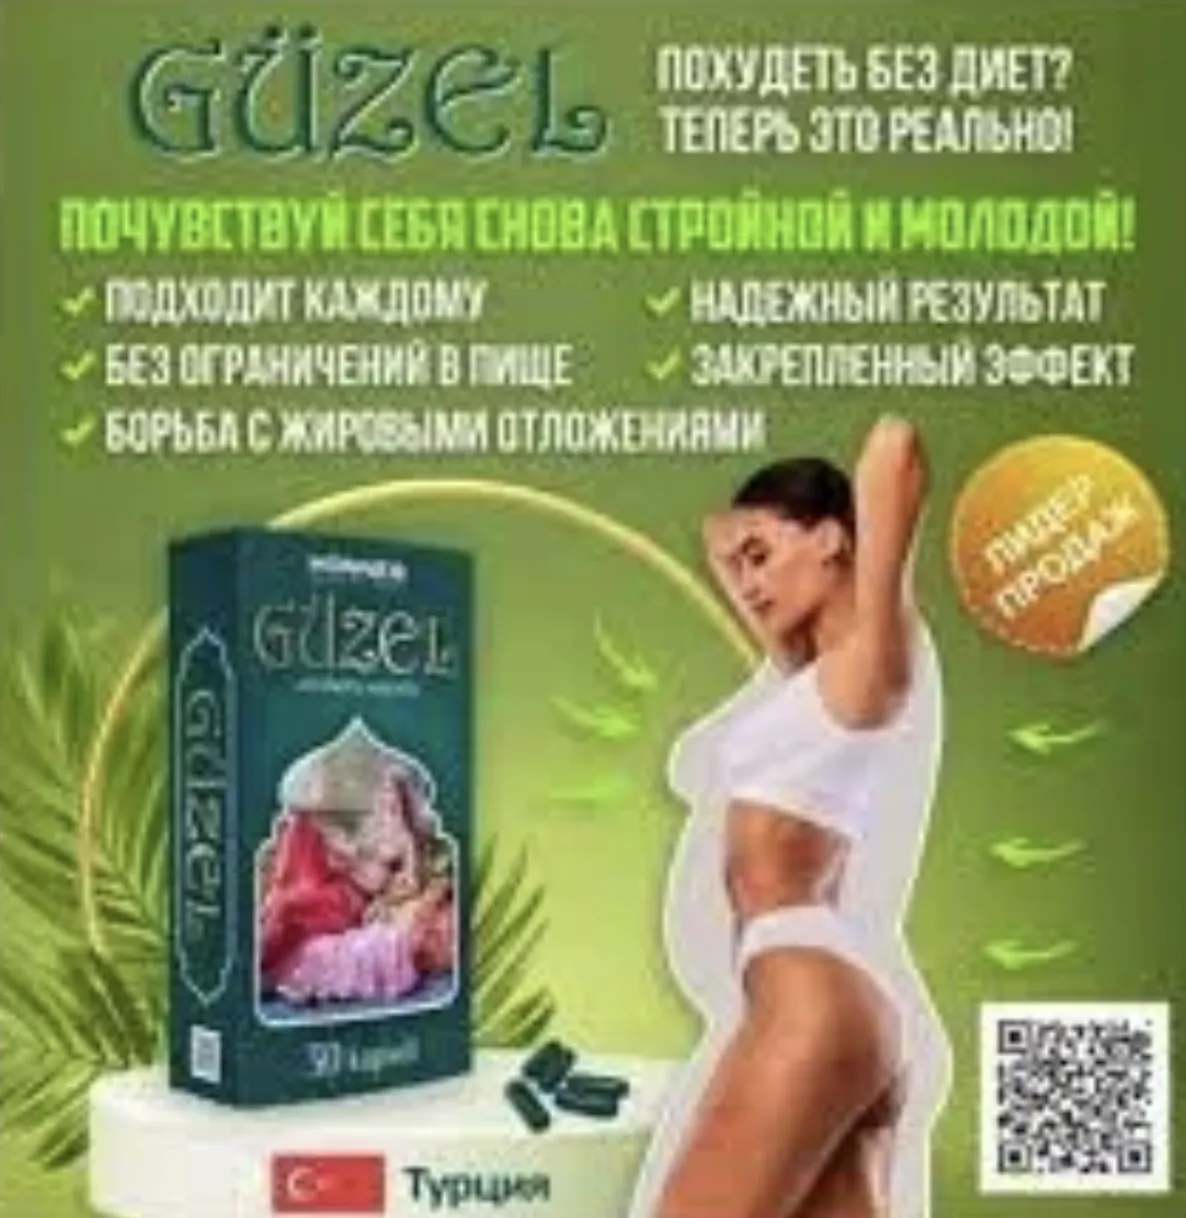 Guzel - Турция капсулы для похудения 30 капсул (Натуральные)#2